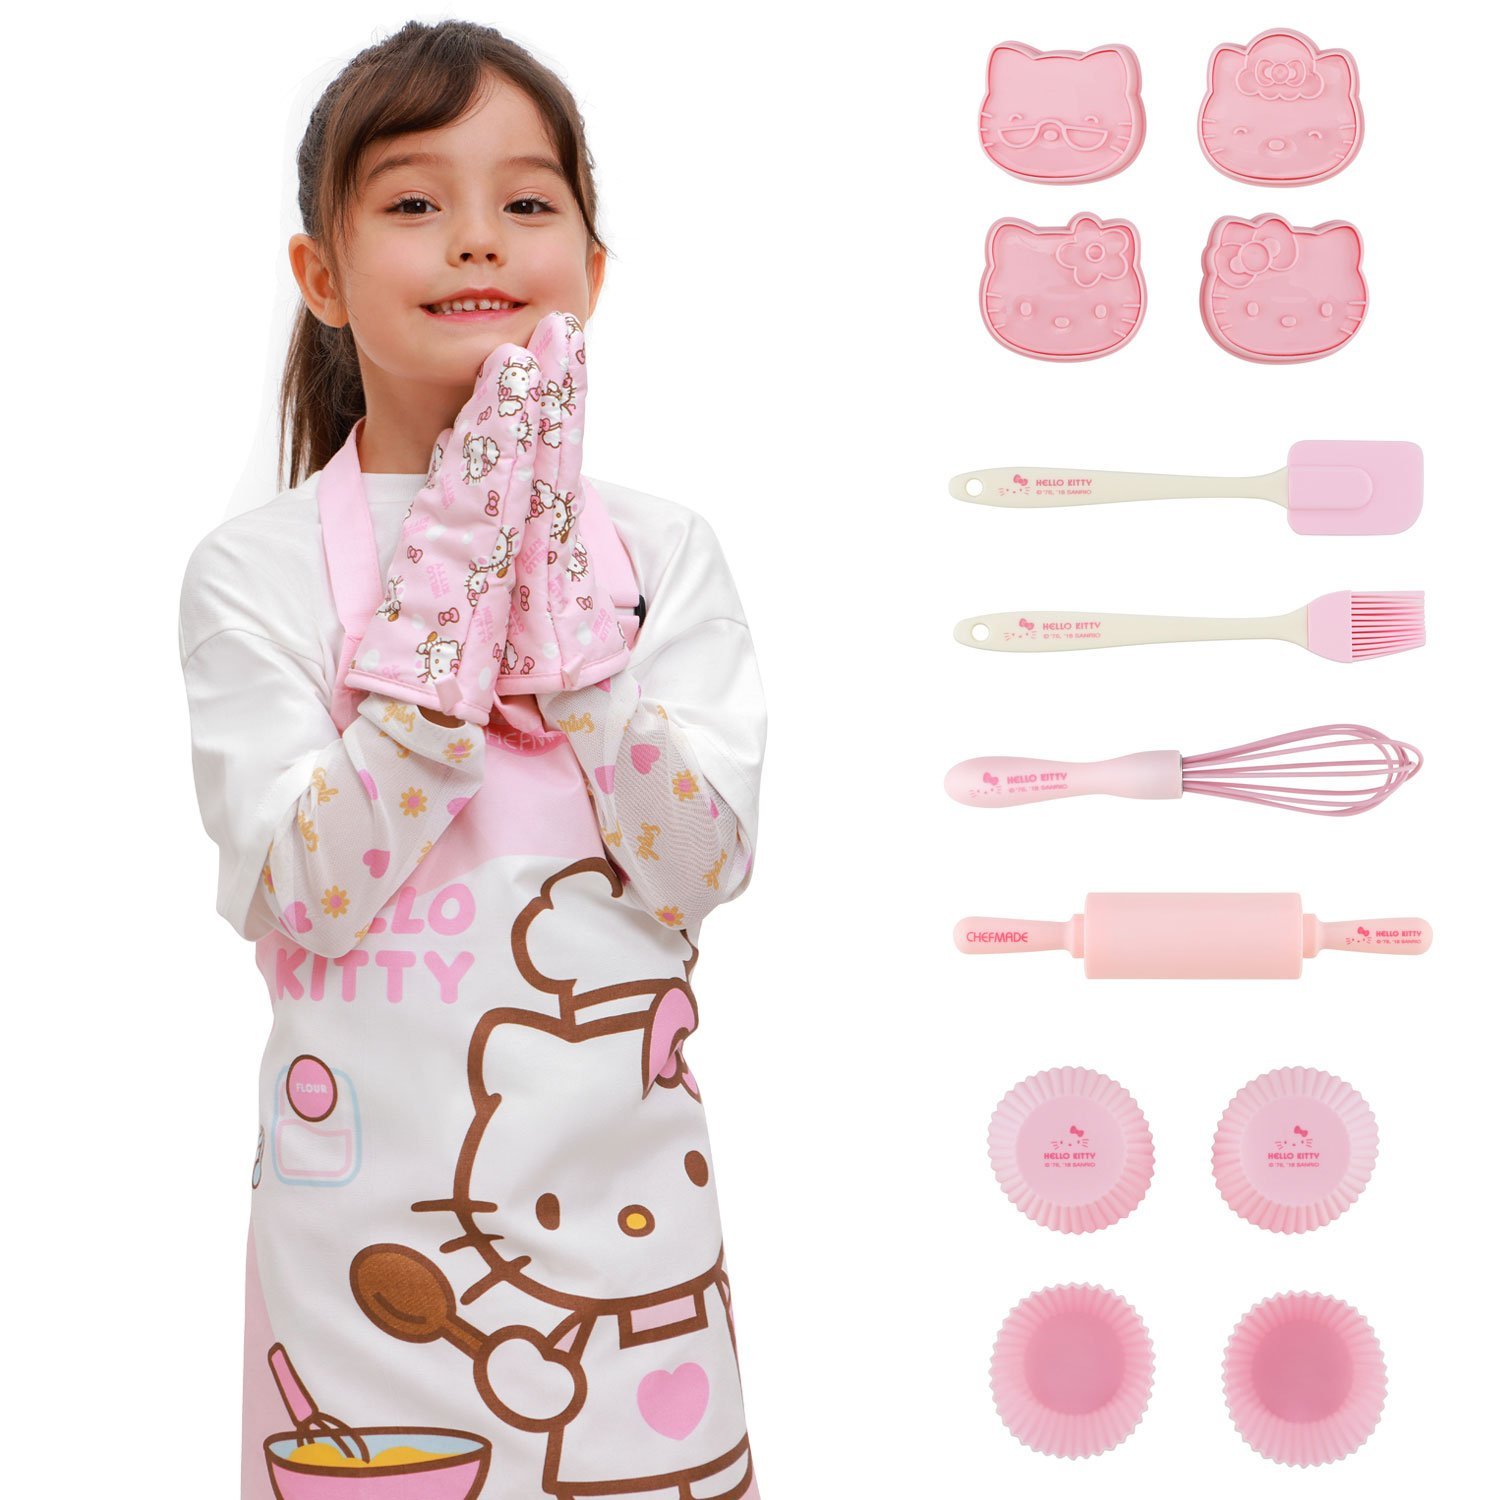 ชุดอุปกรณ์ทำขนมของเด็ก Hello Kitty Kids Baking Set